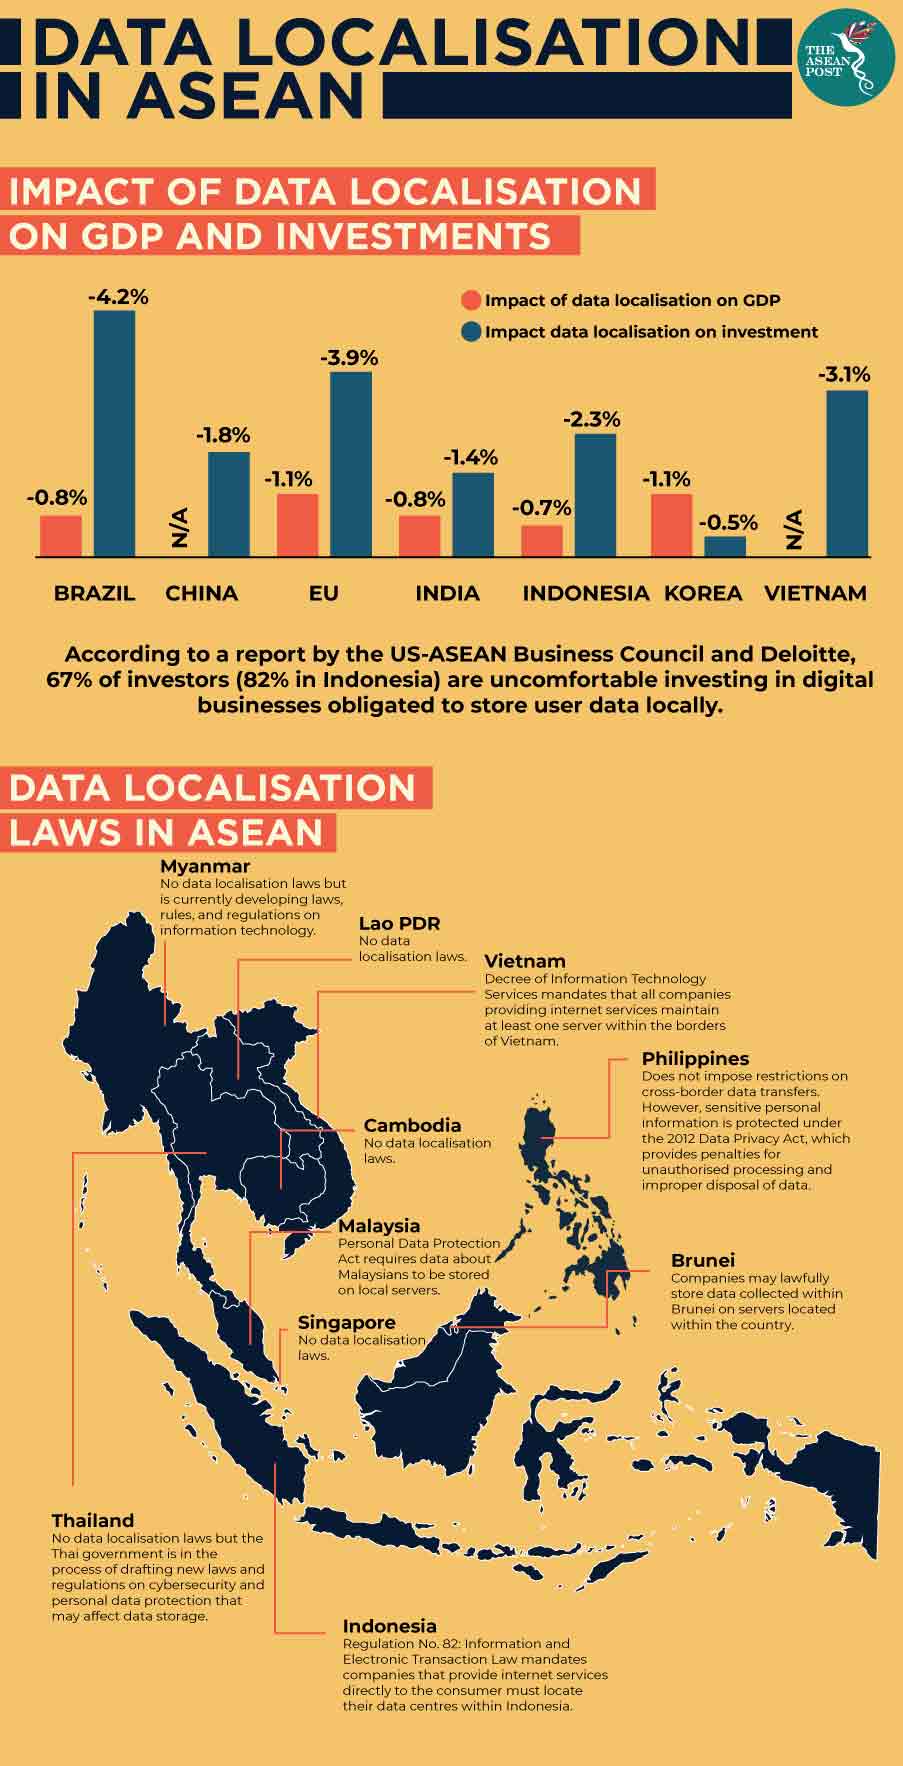 Data localisation in ASEAN